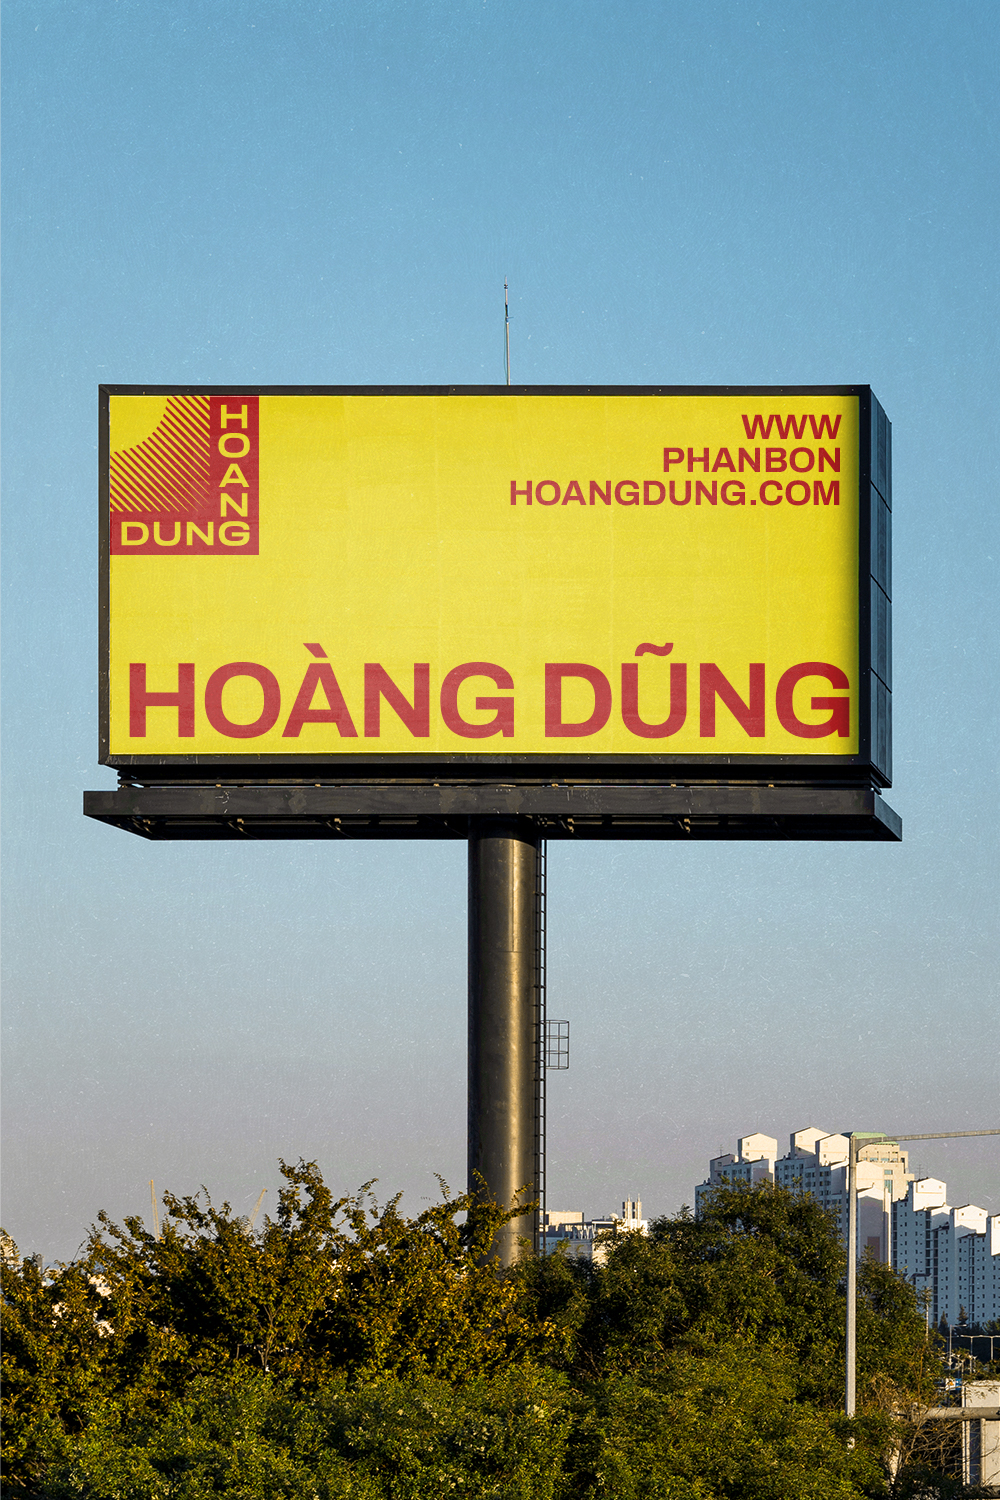 we make a billboard mockup for Hoang Dung.